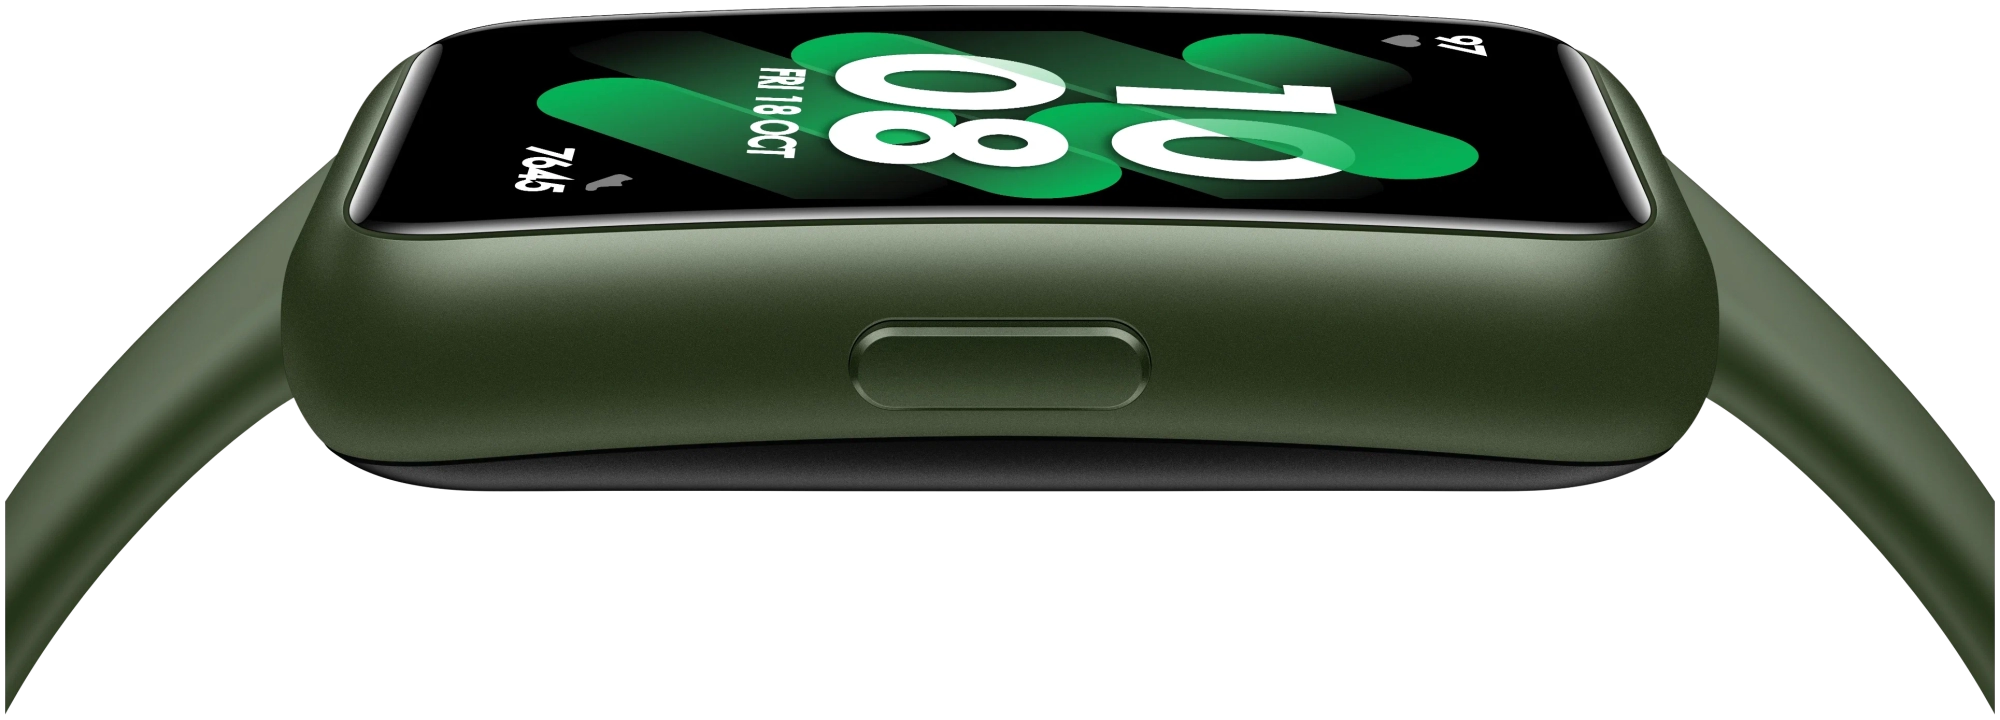 Фитнес-браслет Huawei Band 7 Зеленый в Челябинске купить по недорогим ценам с доставкой